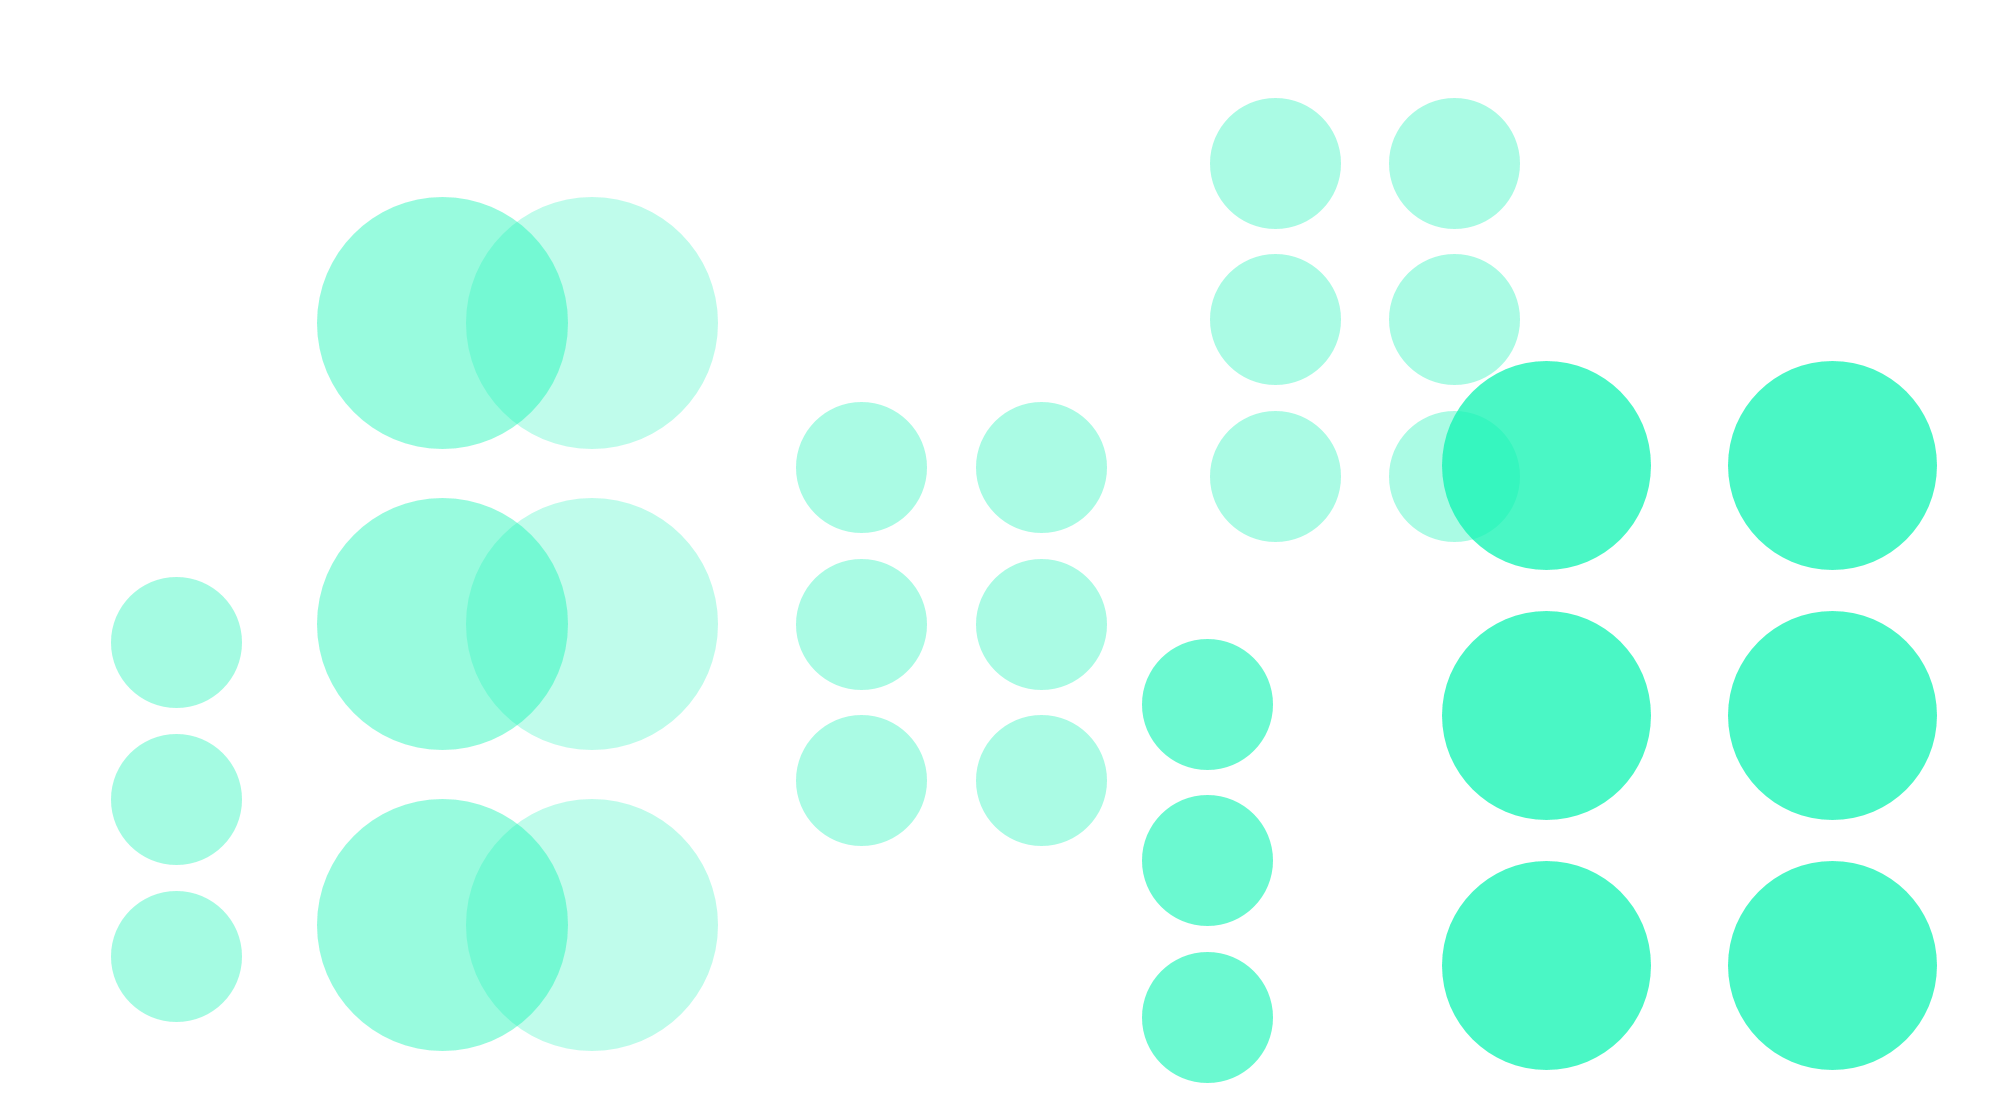 Dekorative Grafik mit grünen Punkten auf weißem Hintergrund